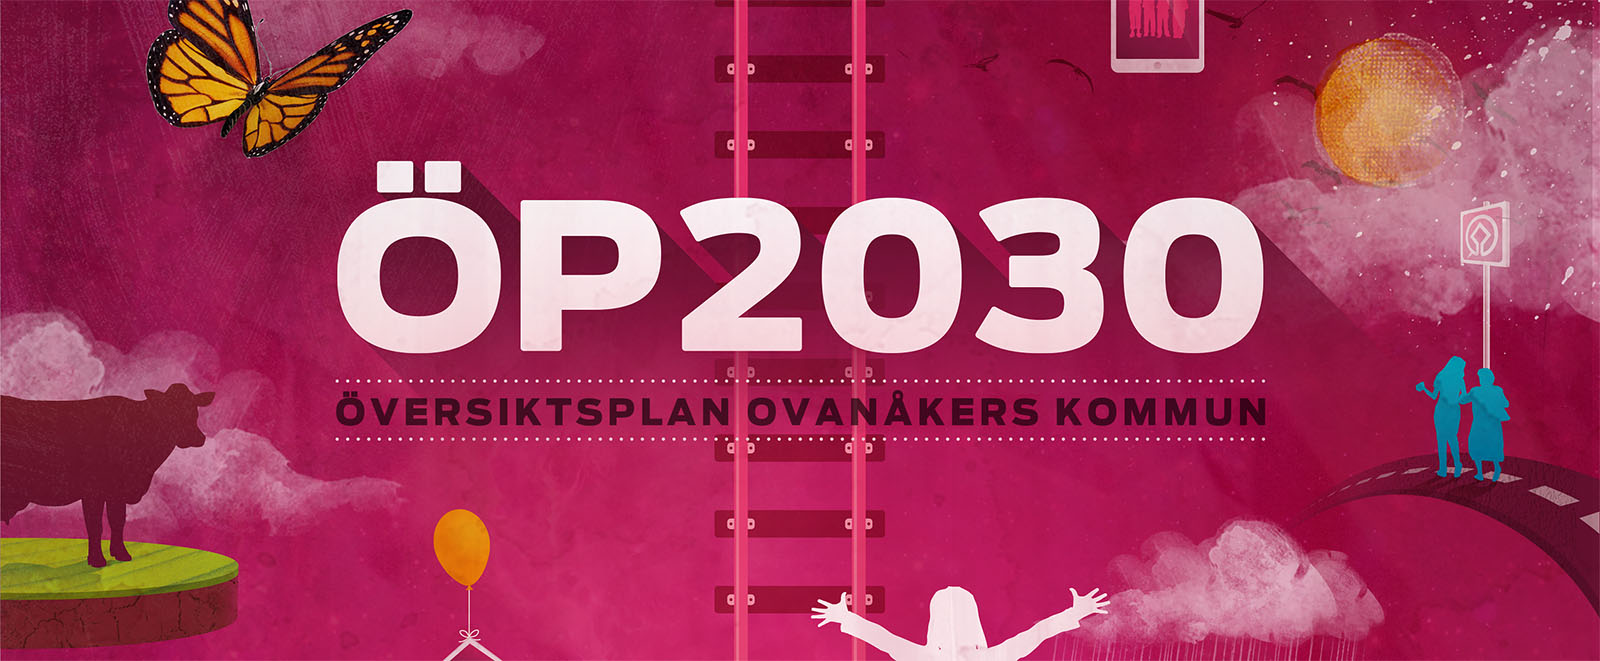 ÖP 2030 - översiktsplan för Ovanåkers kommun